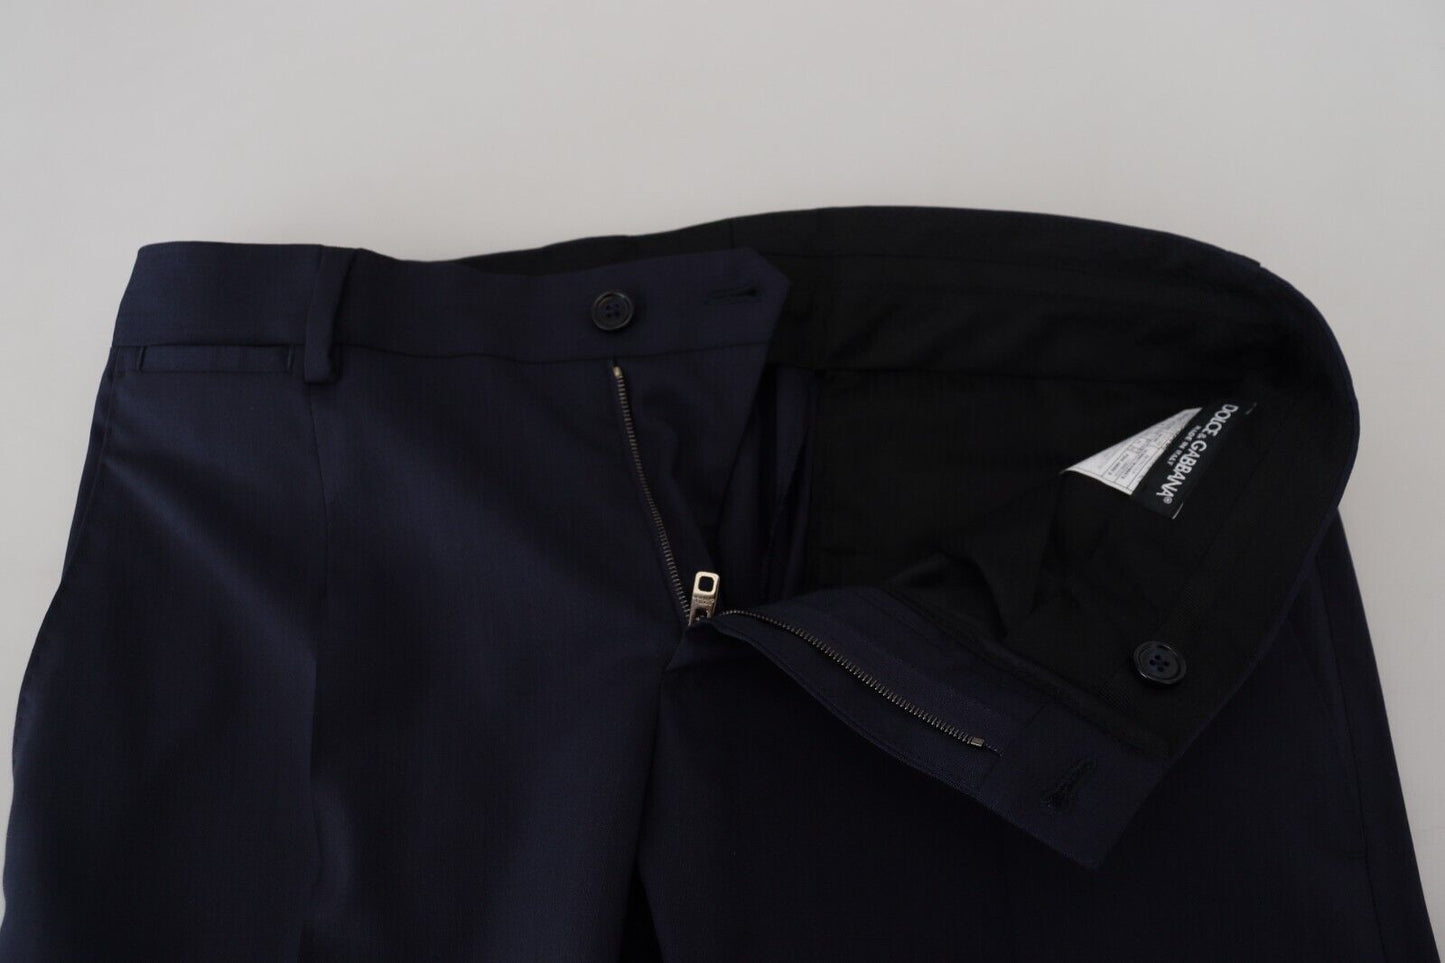 Elegant Black Wool-Silk Slim Fit Suit